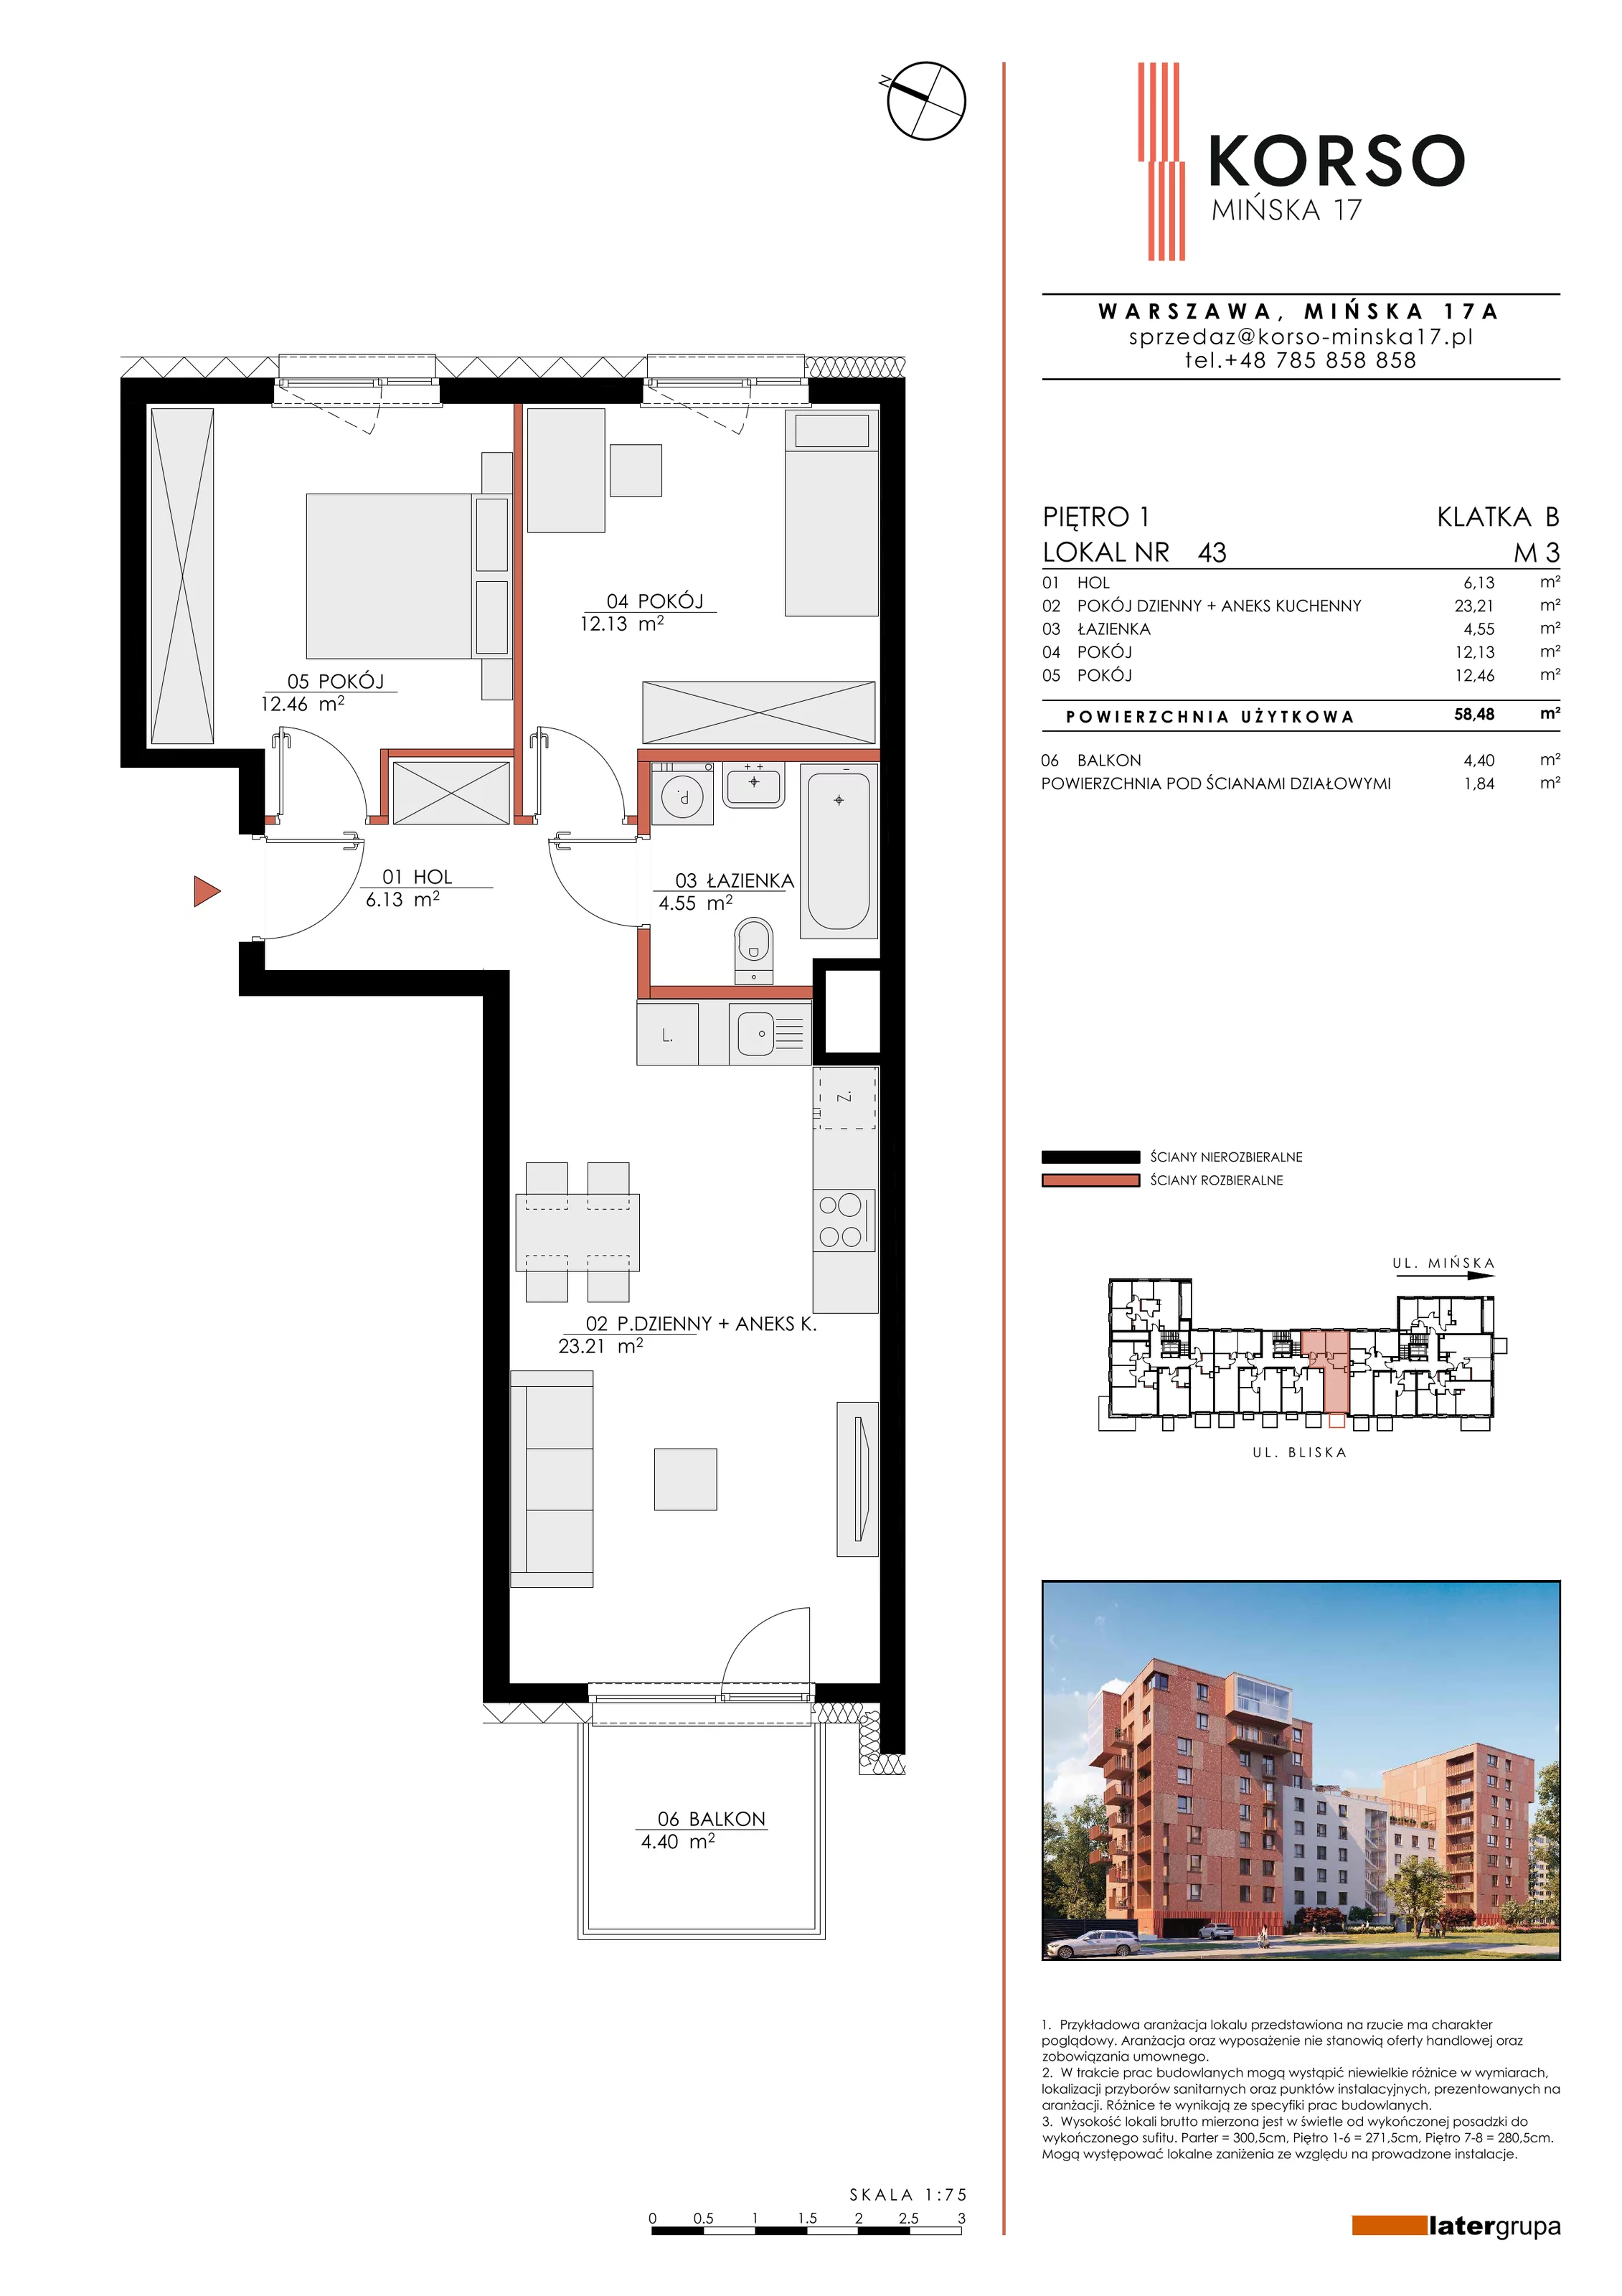 Mieszkanie 58,48 m², piętro 1, oferta nr 43, KORSO Mińska 17, Warszawa, Praga Południe, Kamionek, ul. Mińska 17